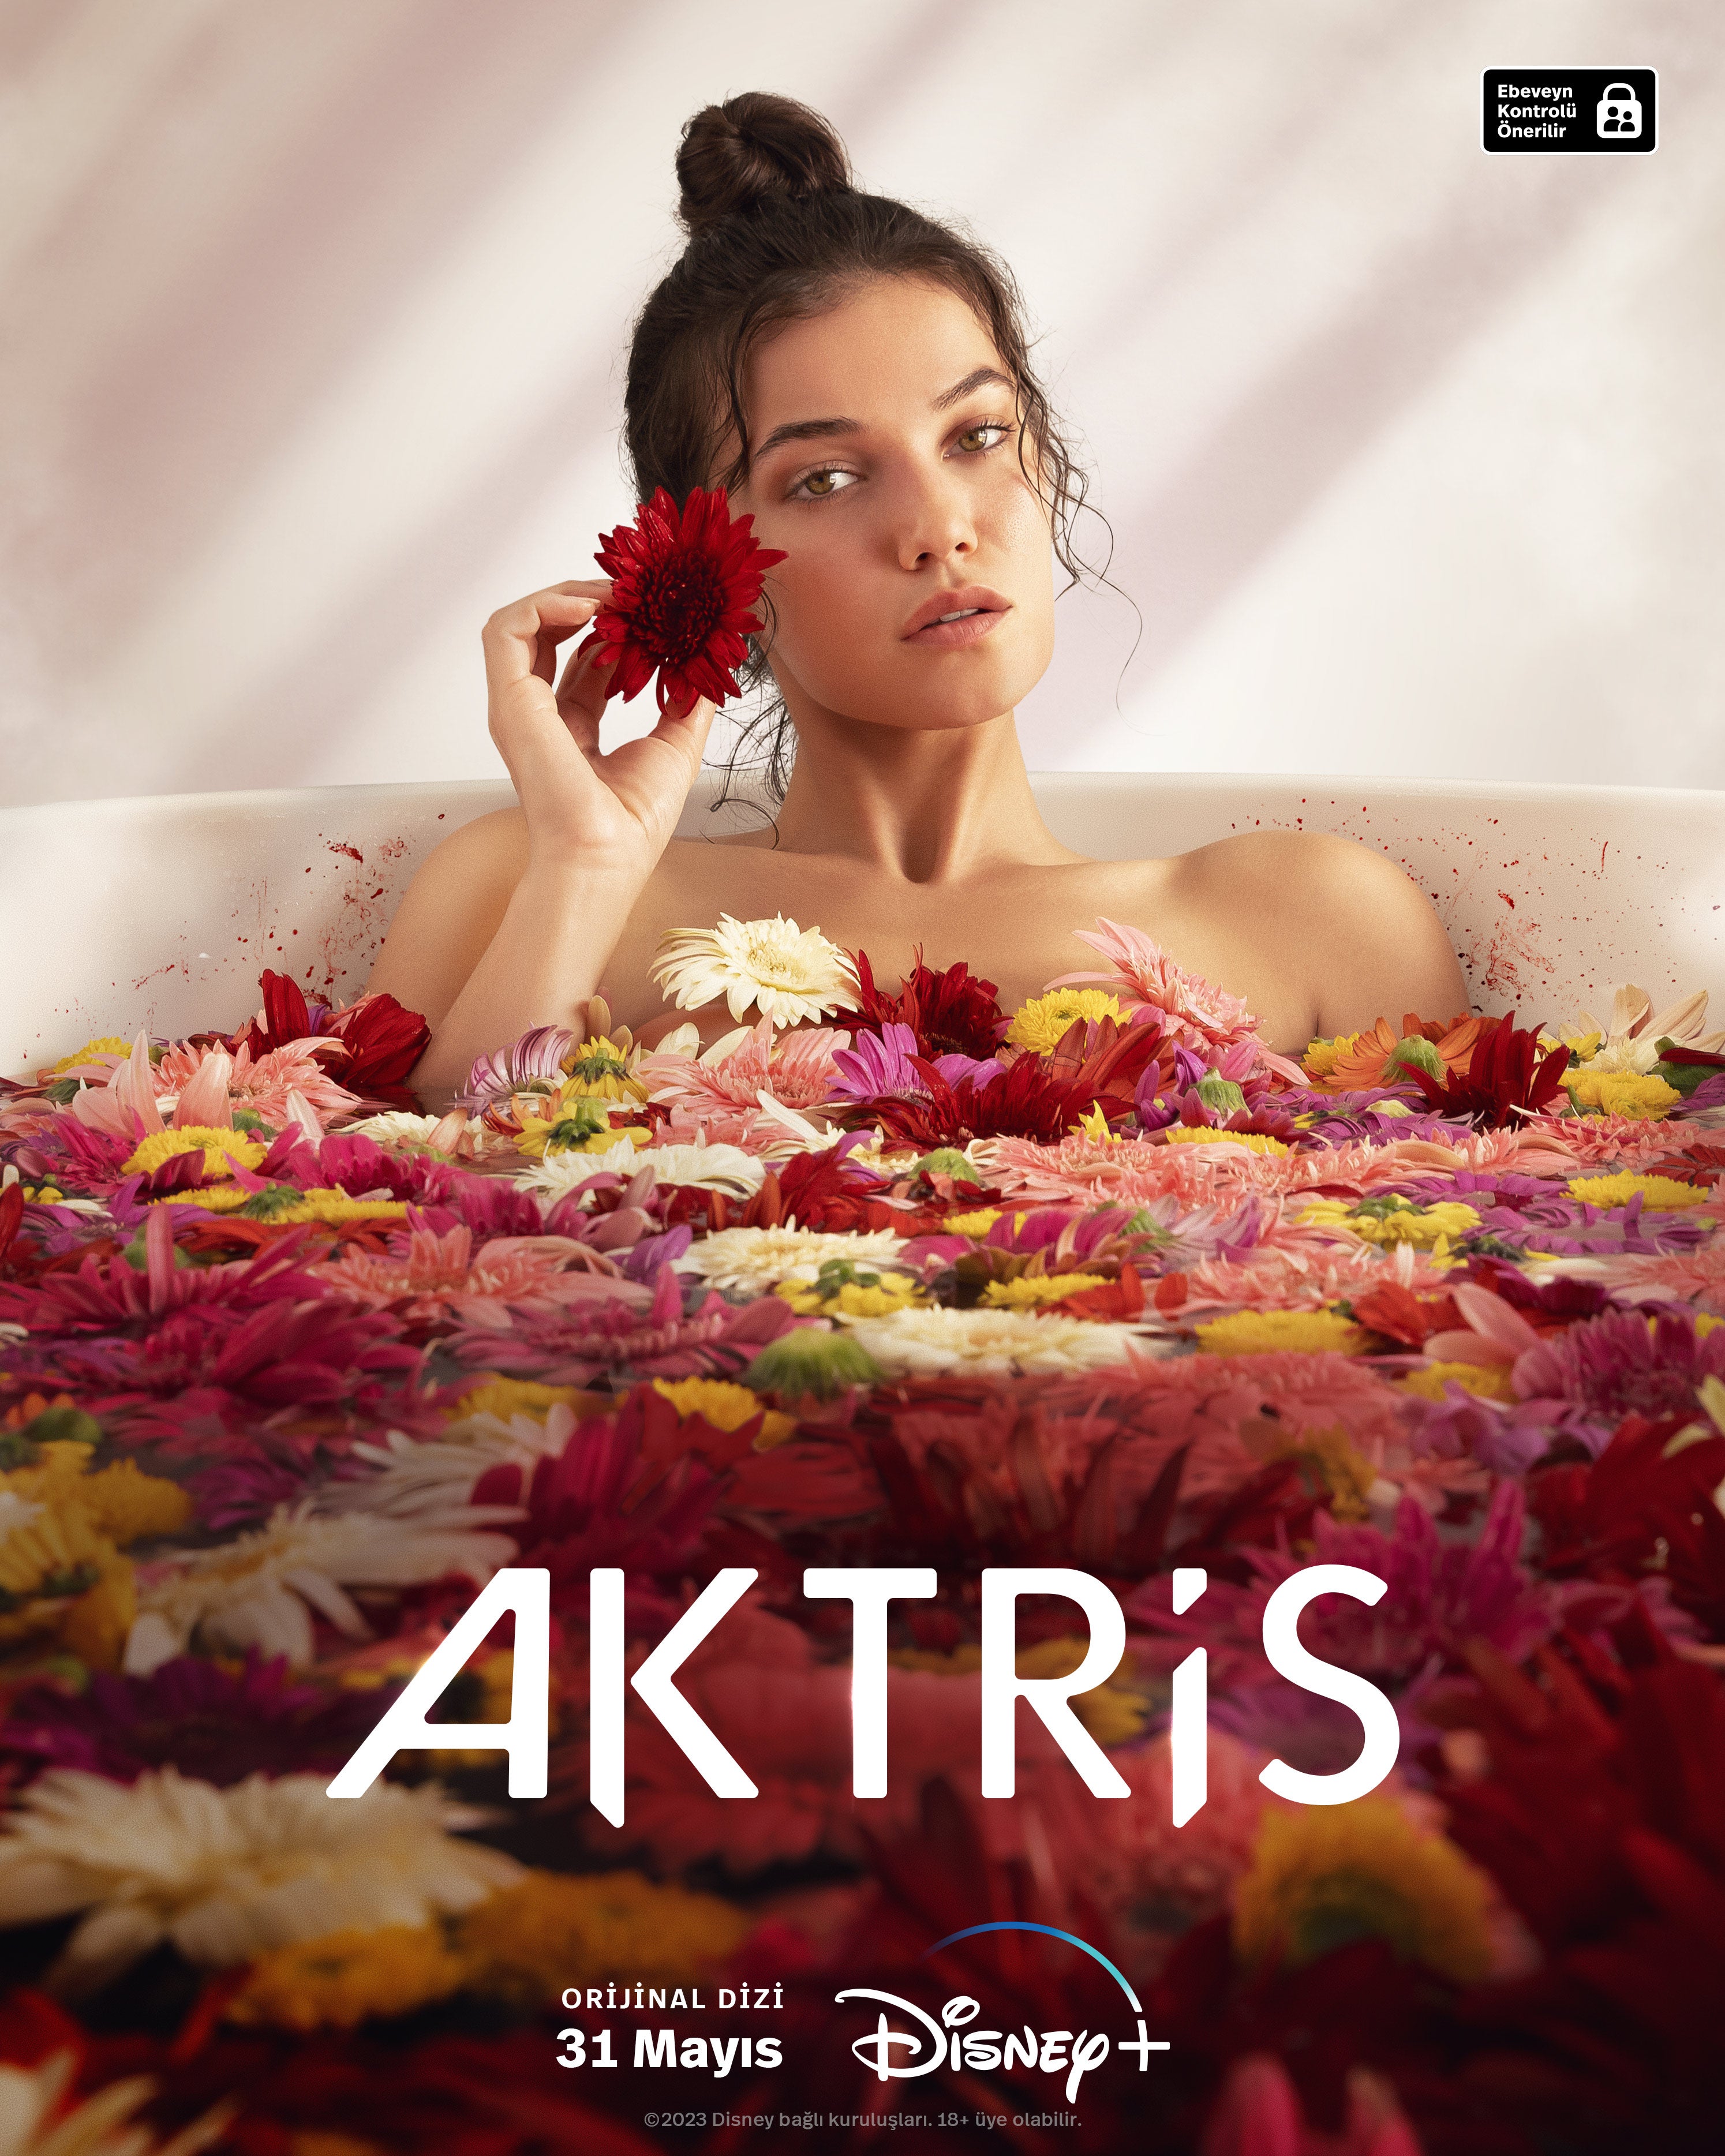 TV ratings for Actress (Aktris) in Portugal. Disney+ TV series